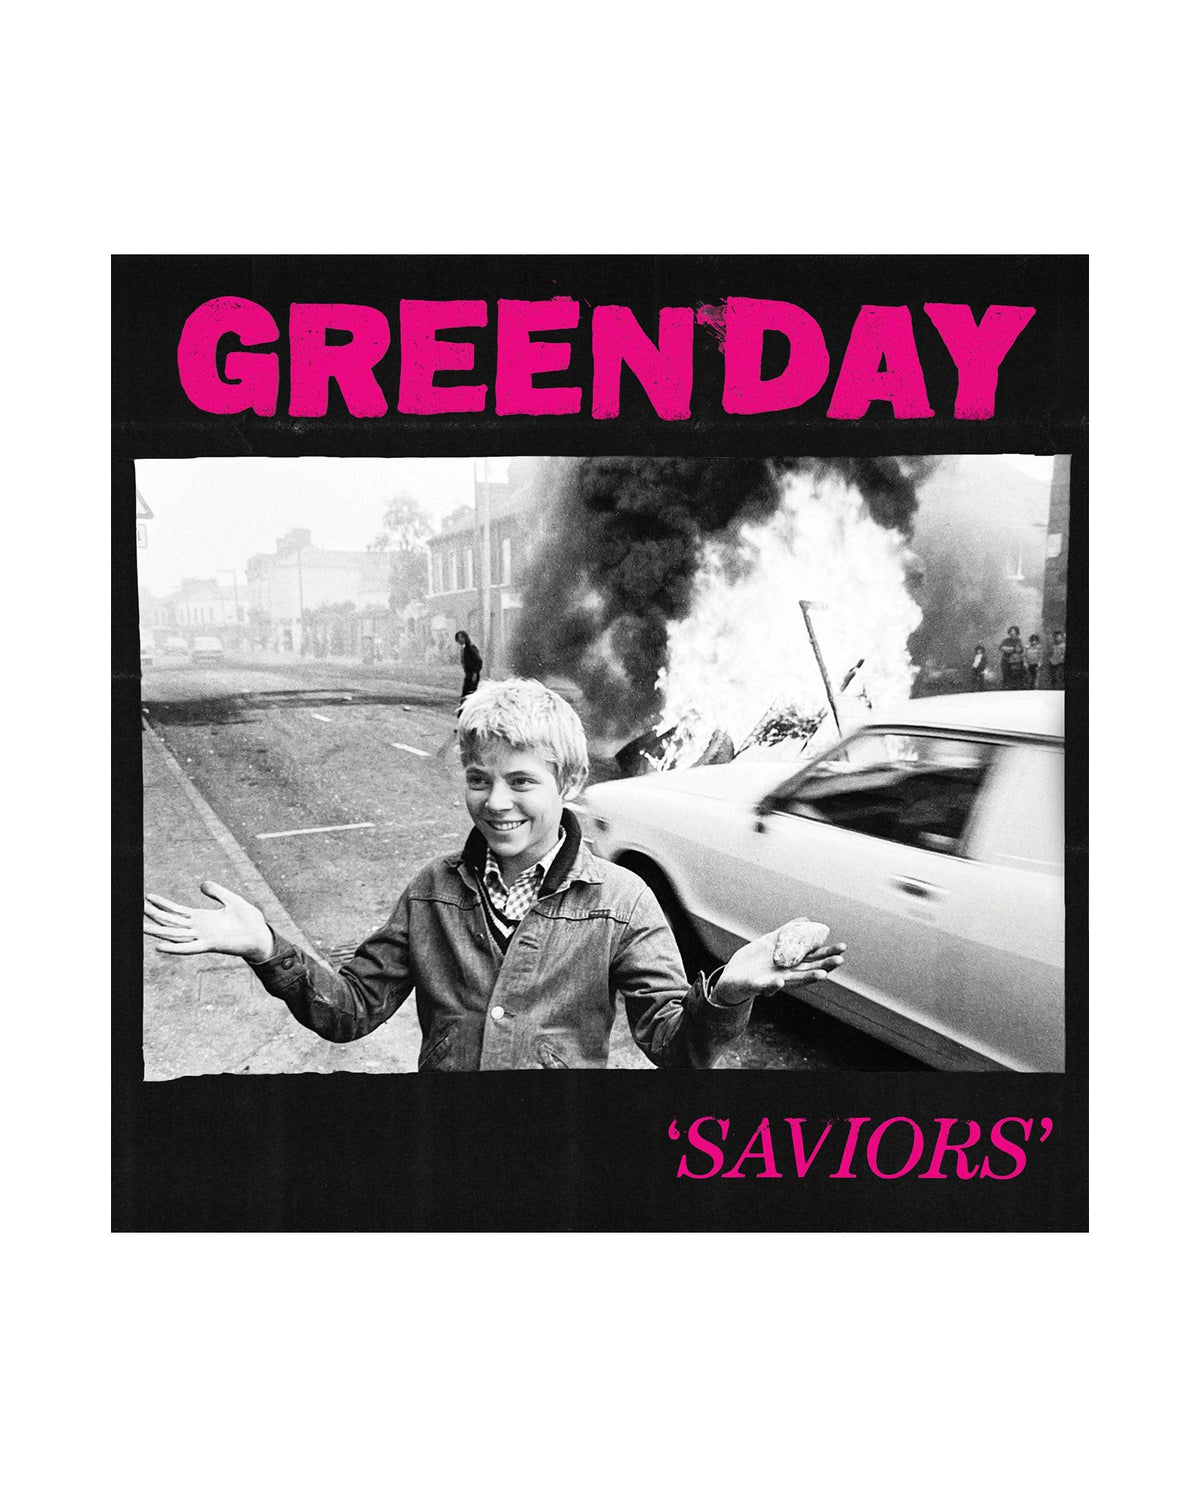 Green Day - LP Vinilo "Saviors" - D2fy · Rocktud - Rocktud